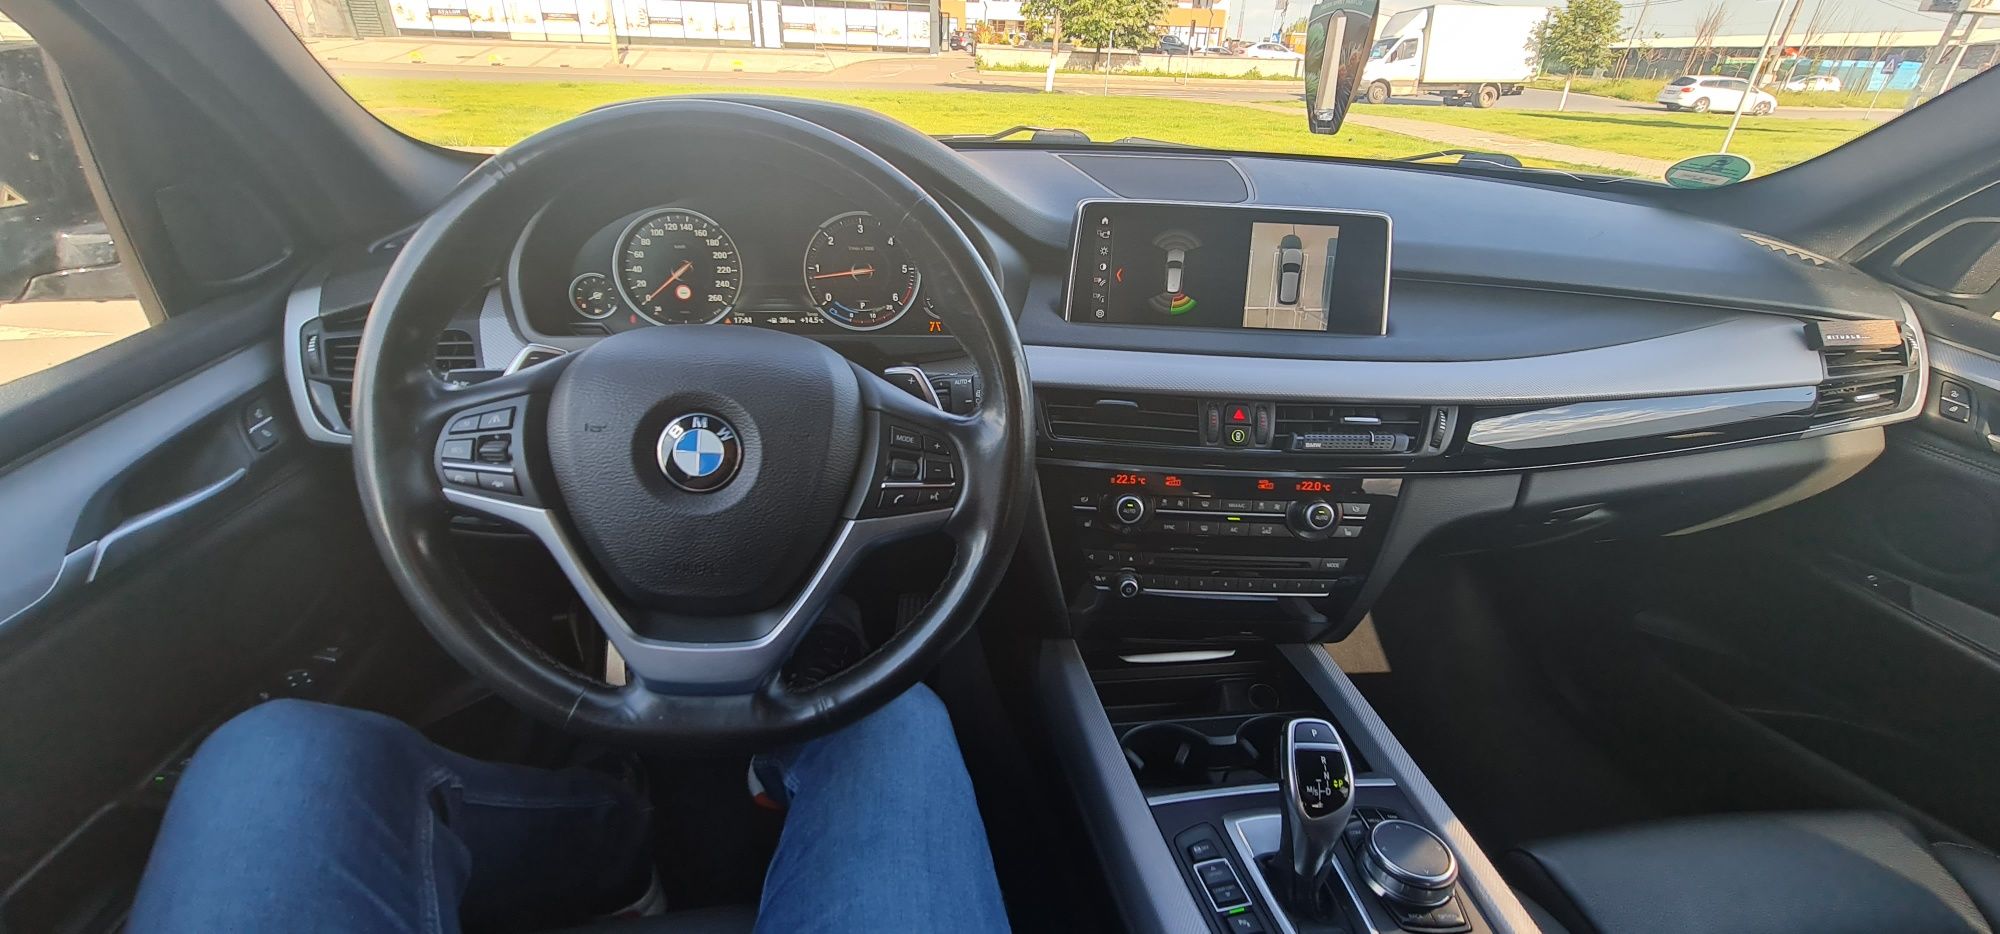 BMW x5 f15 2018 40d